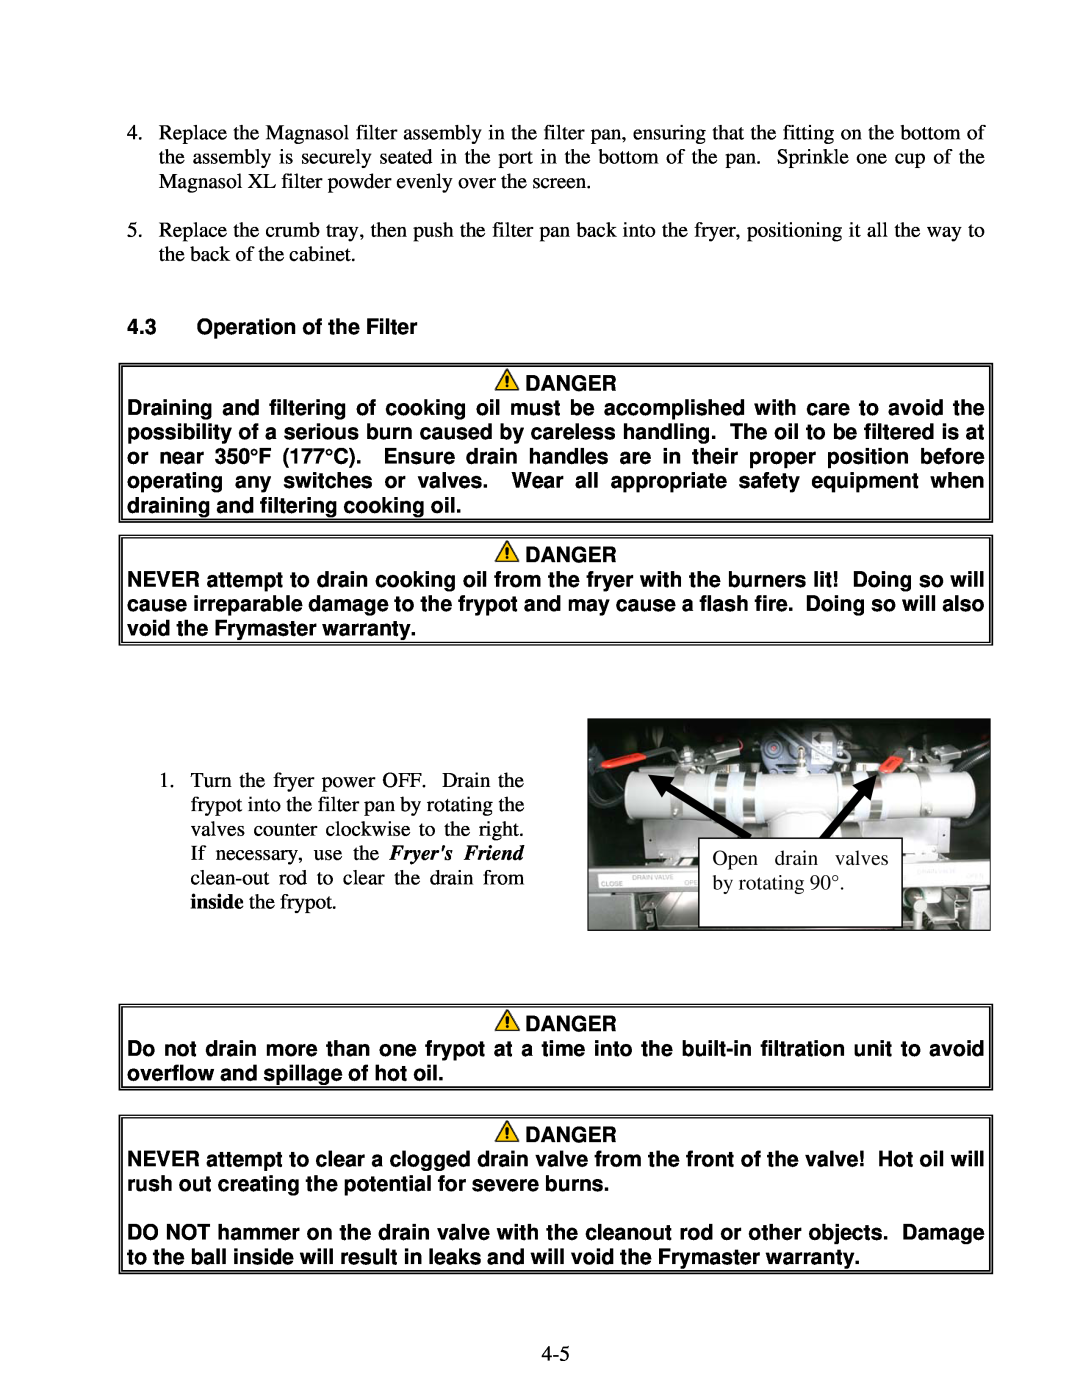 Frymaster H55 operation manual 4.3Operation of the Filter DANGER, Danger 